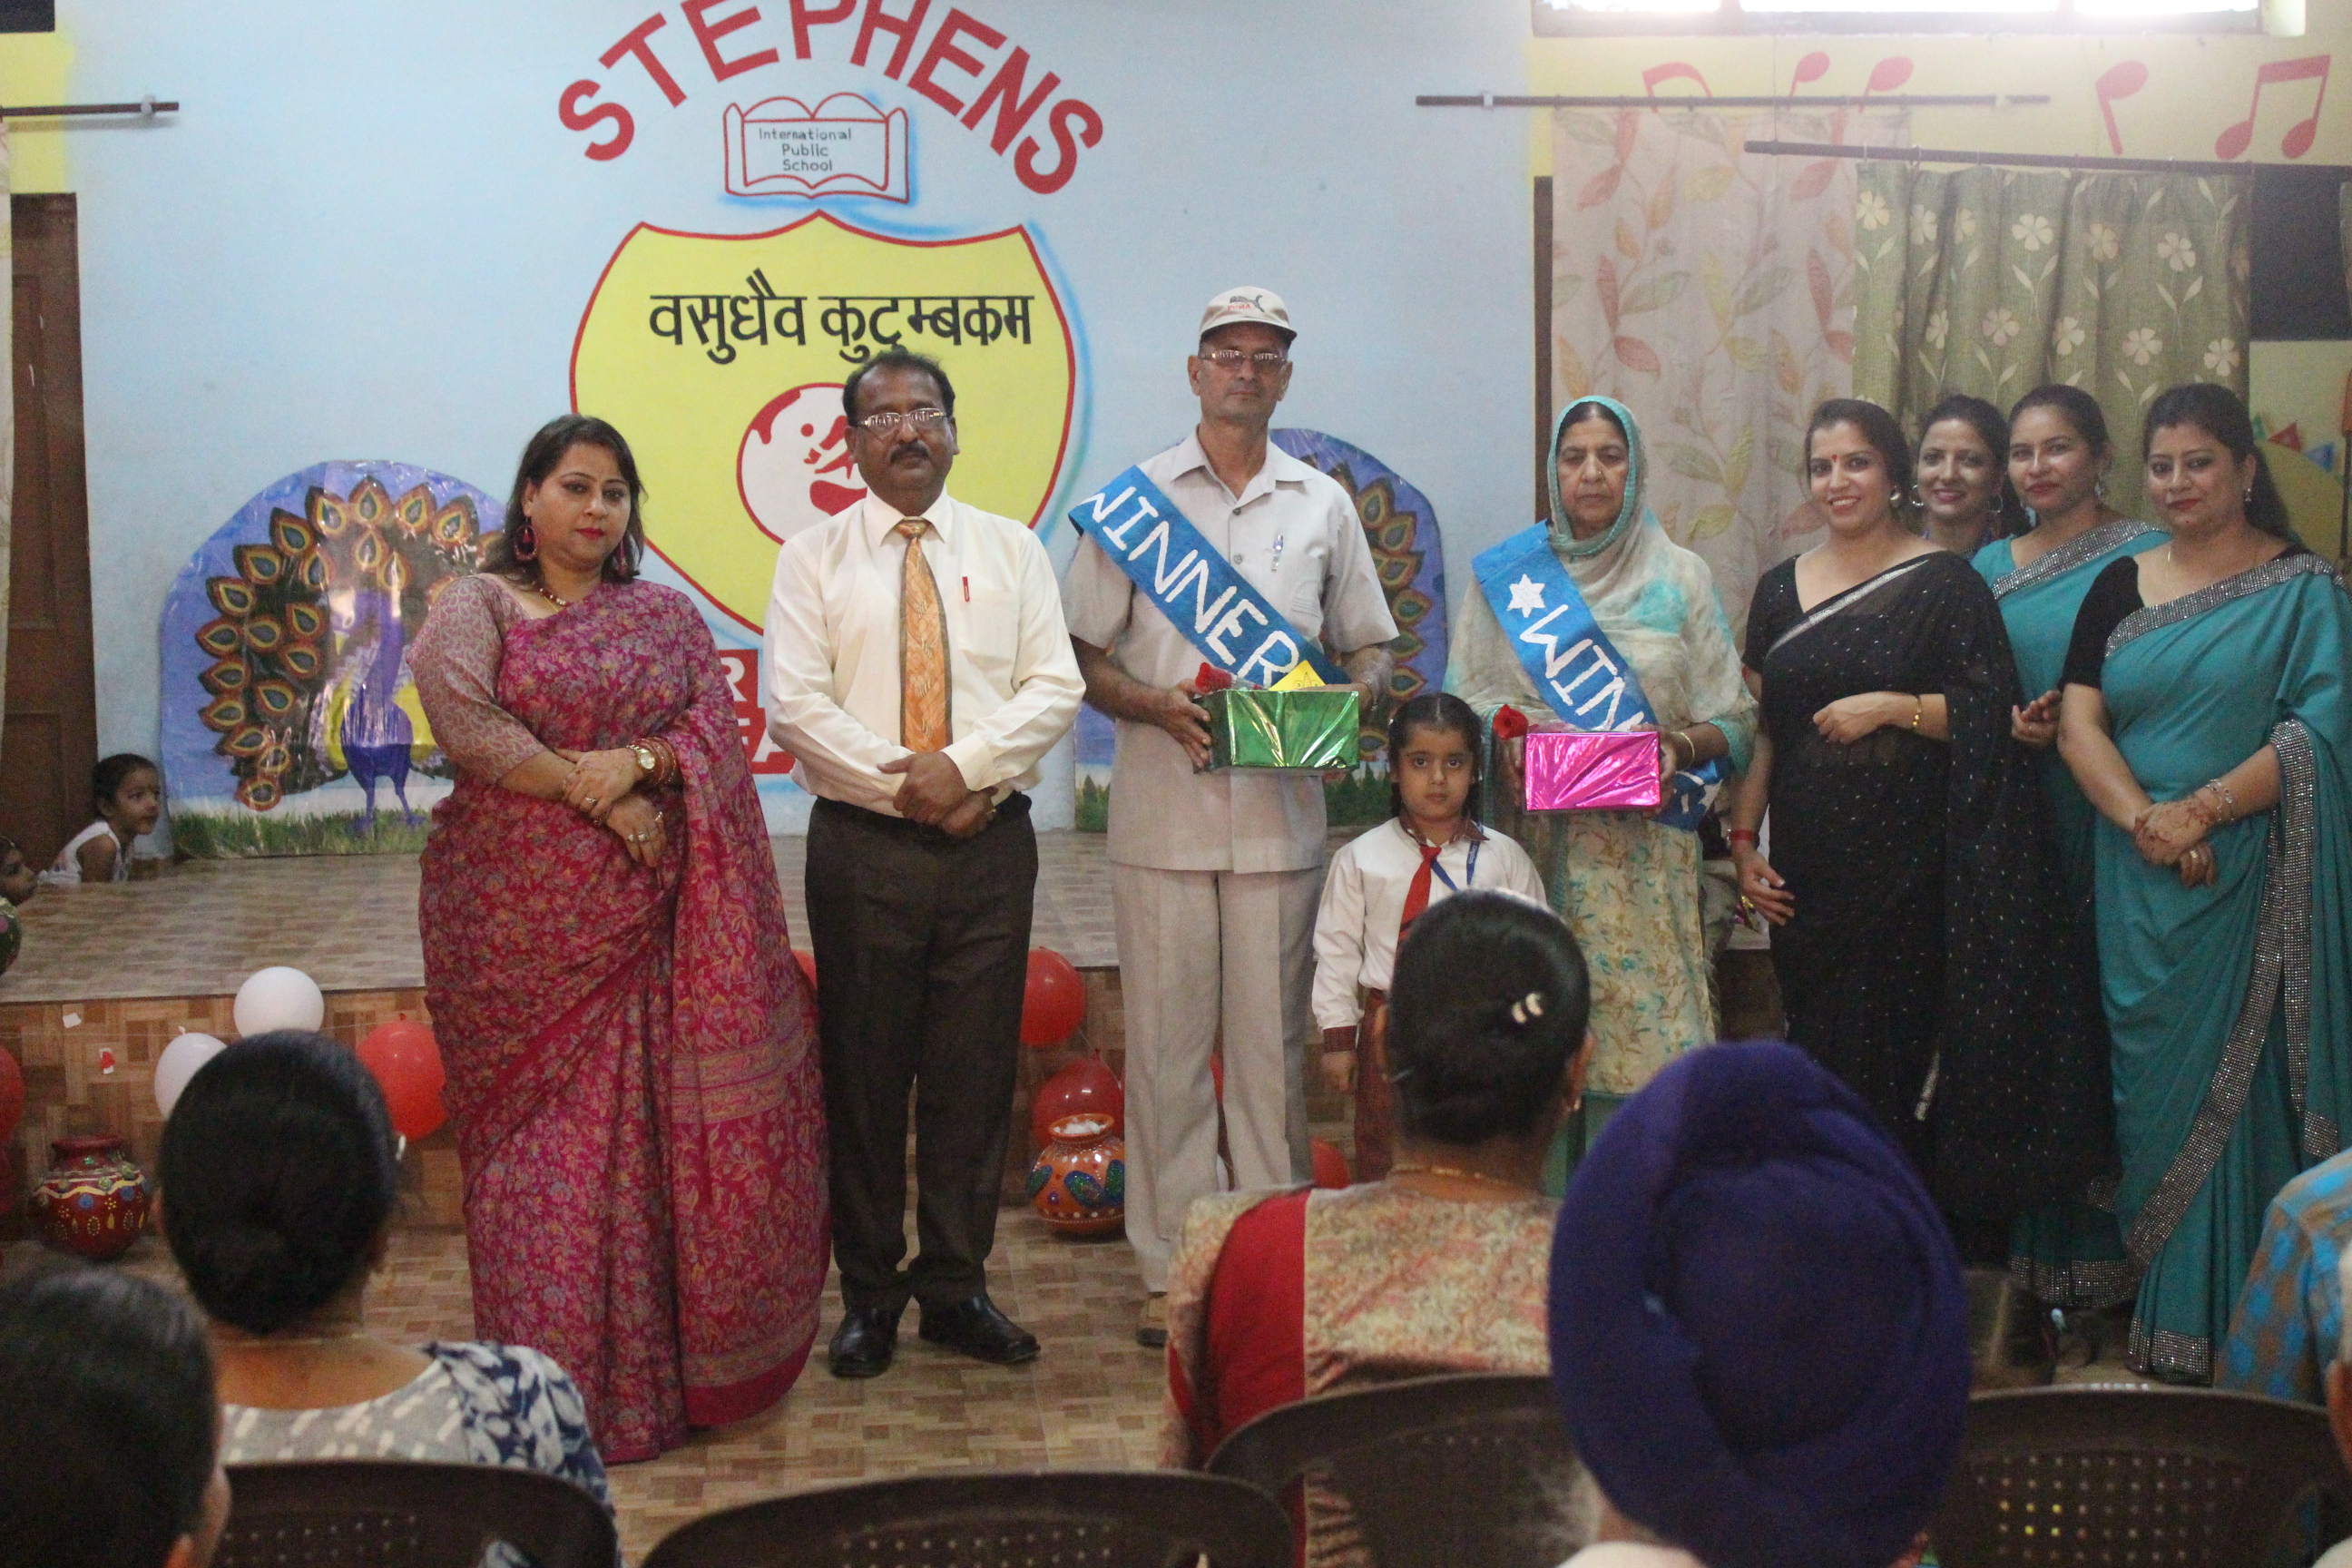 Dr. Aparna Kids Kingdom Celebrates Grandparents’ Day